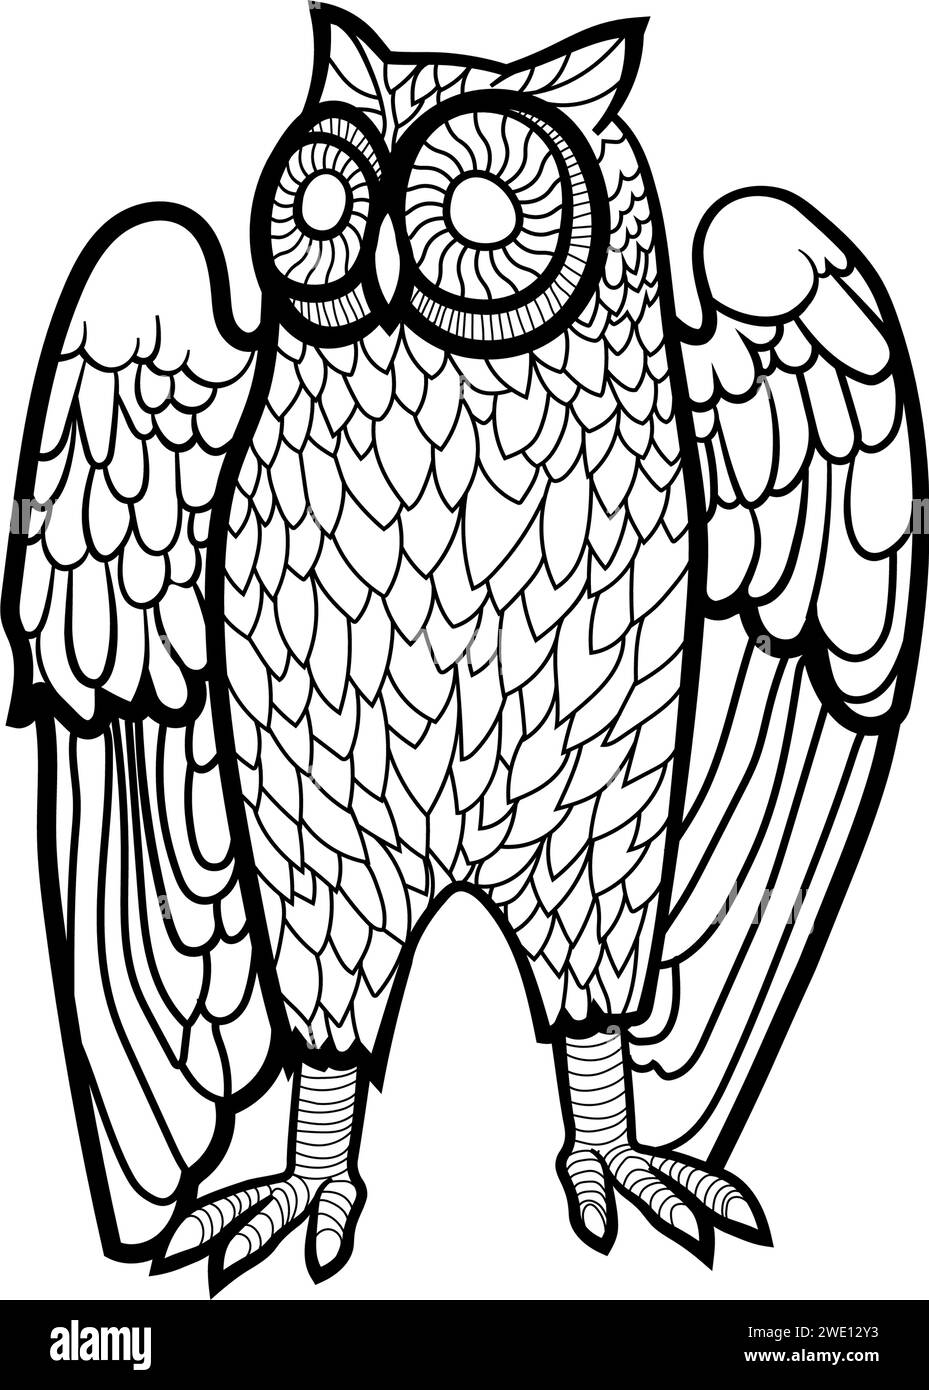 Illustration stylisée d'un hibou, dessin au trait complexe, noir et blanc, grands yeux circulaires, corps recouvert de plumes détaillées. Illustration de Vecteur